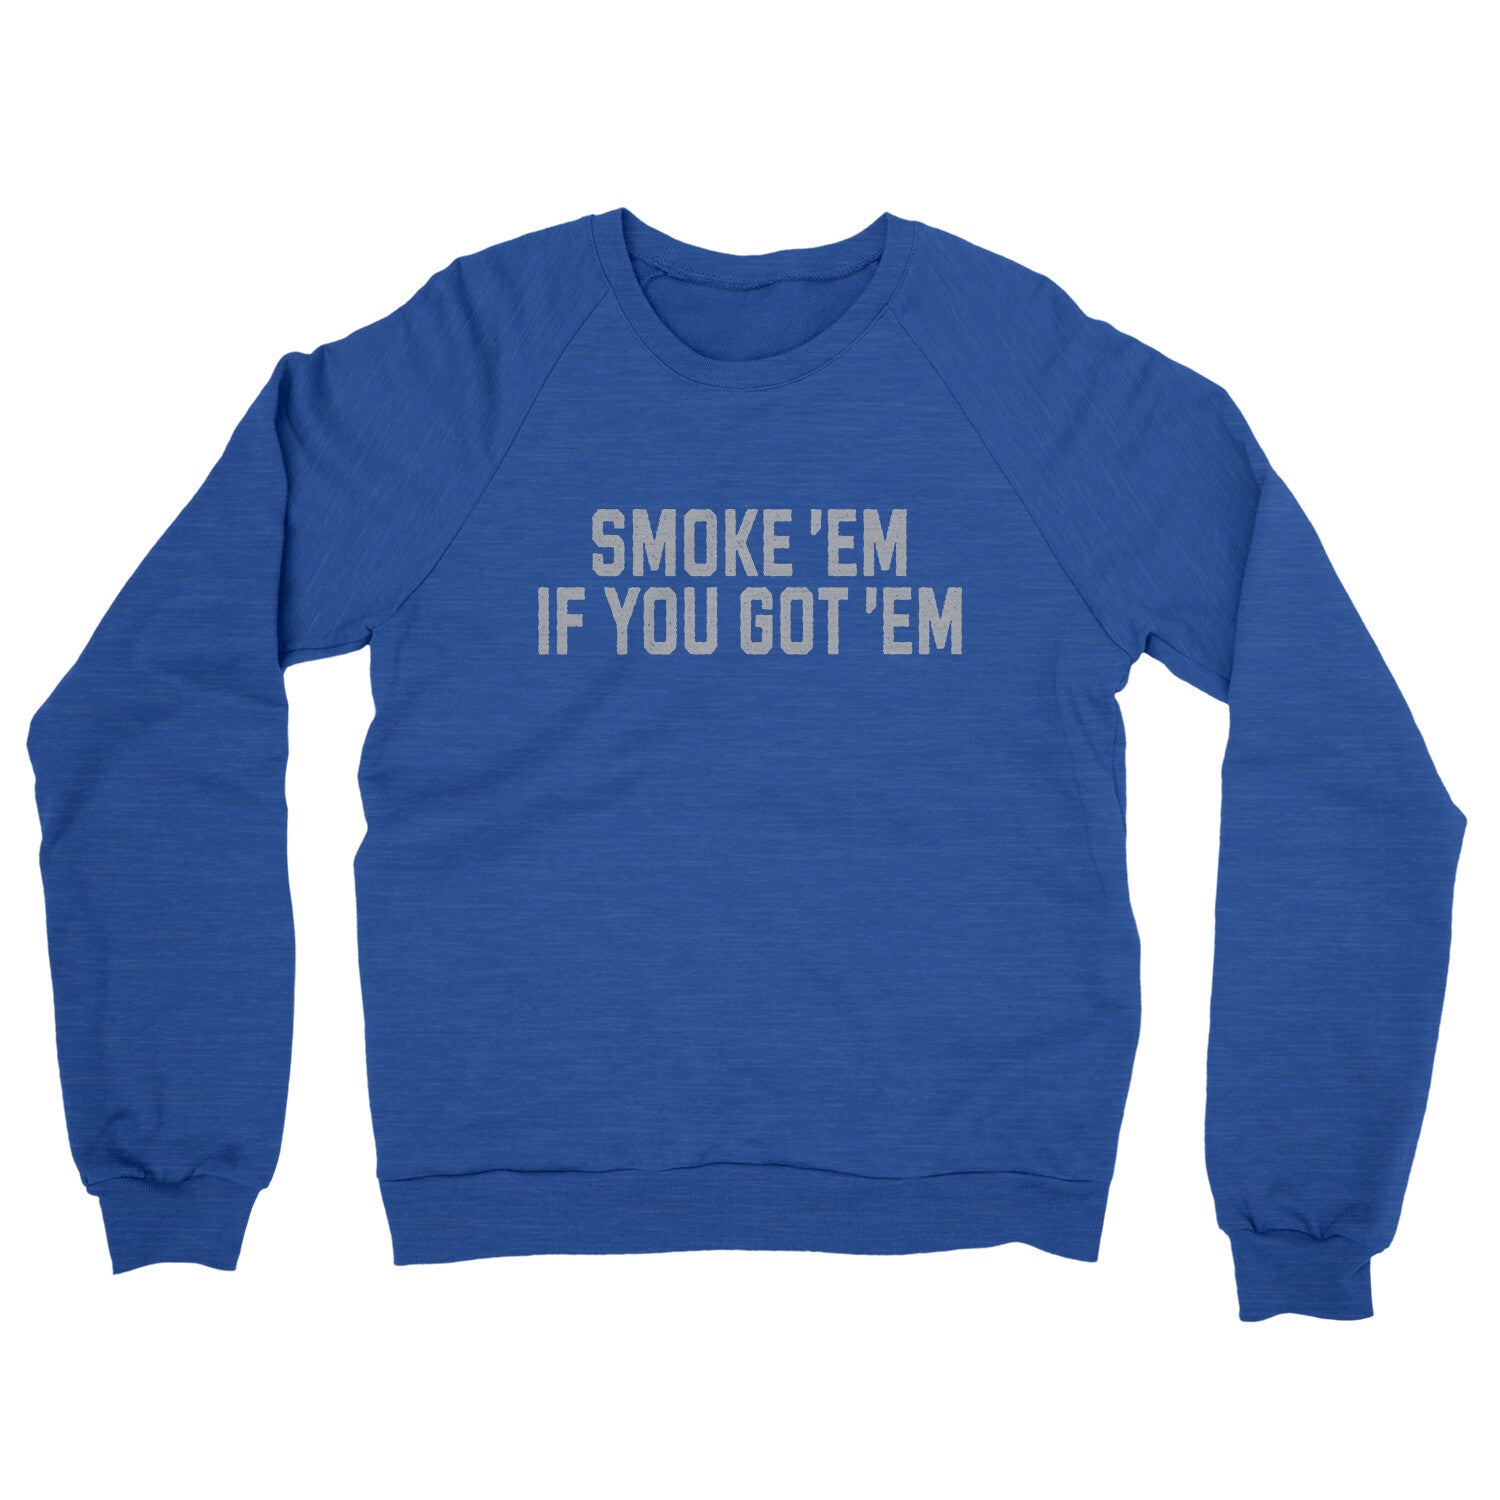 Smoke ‘em If you Got ‘em in Heather Royal Color